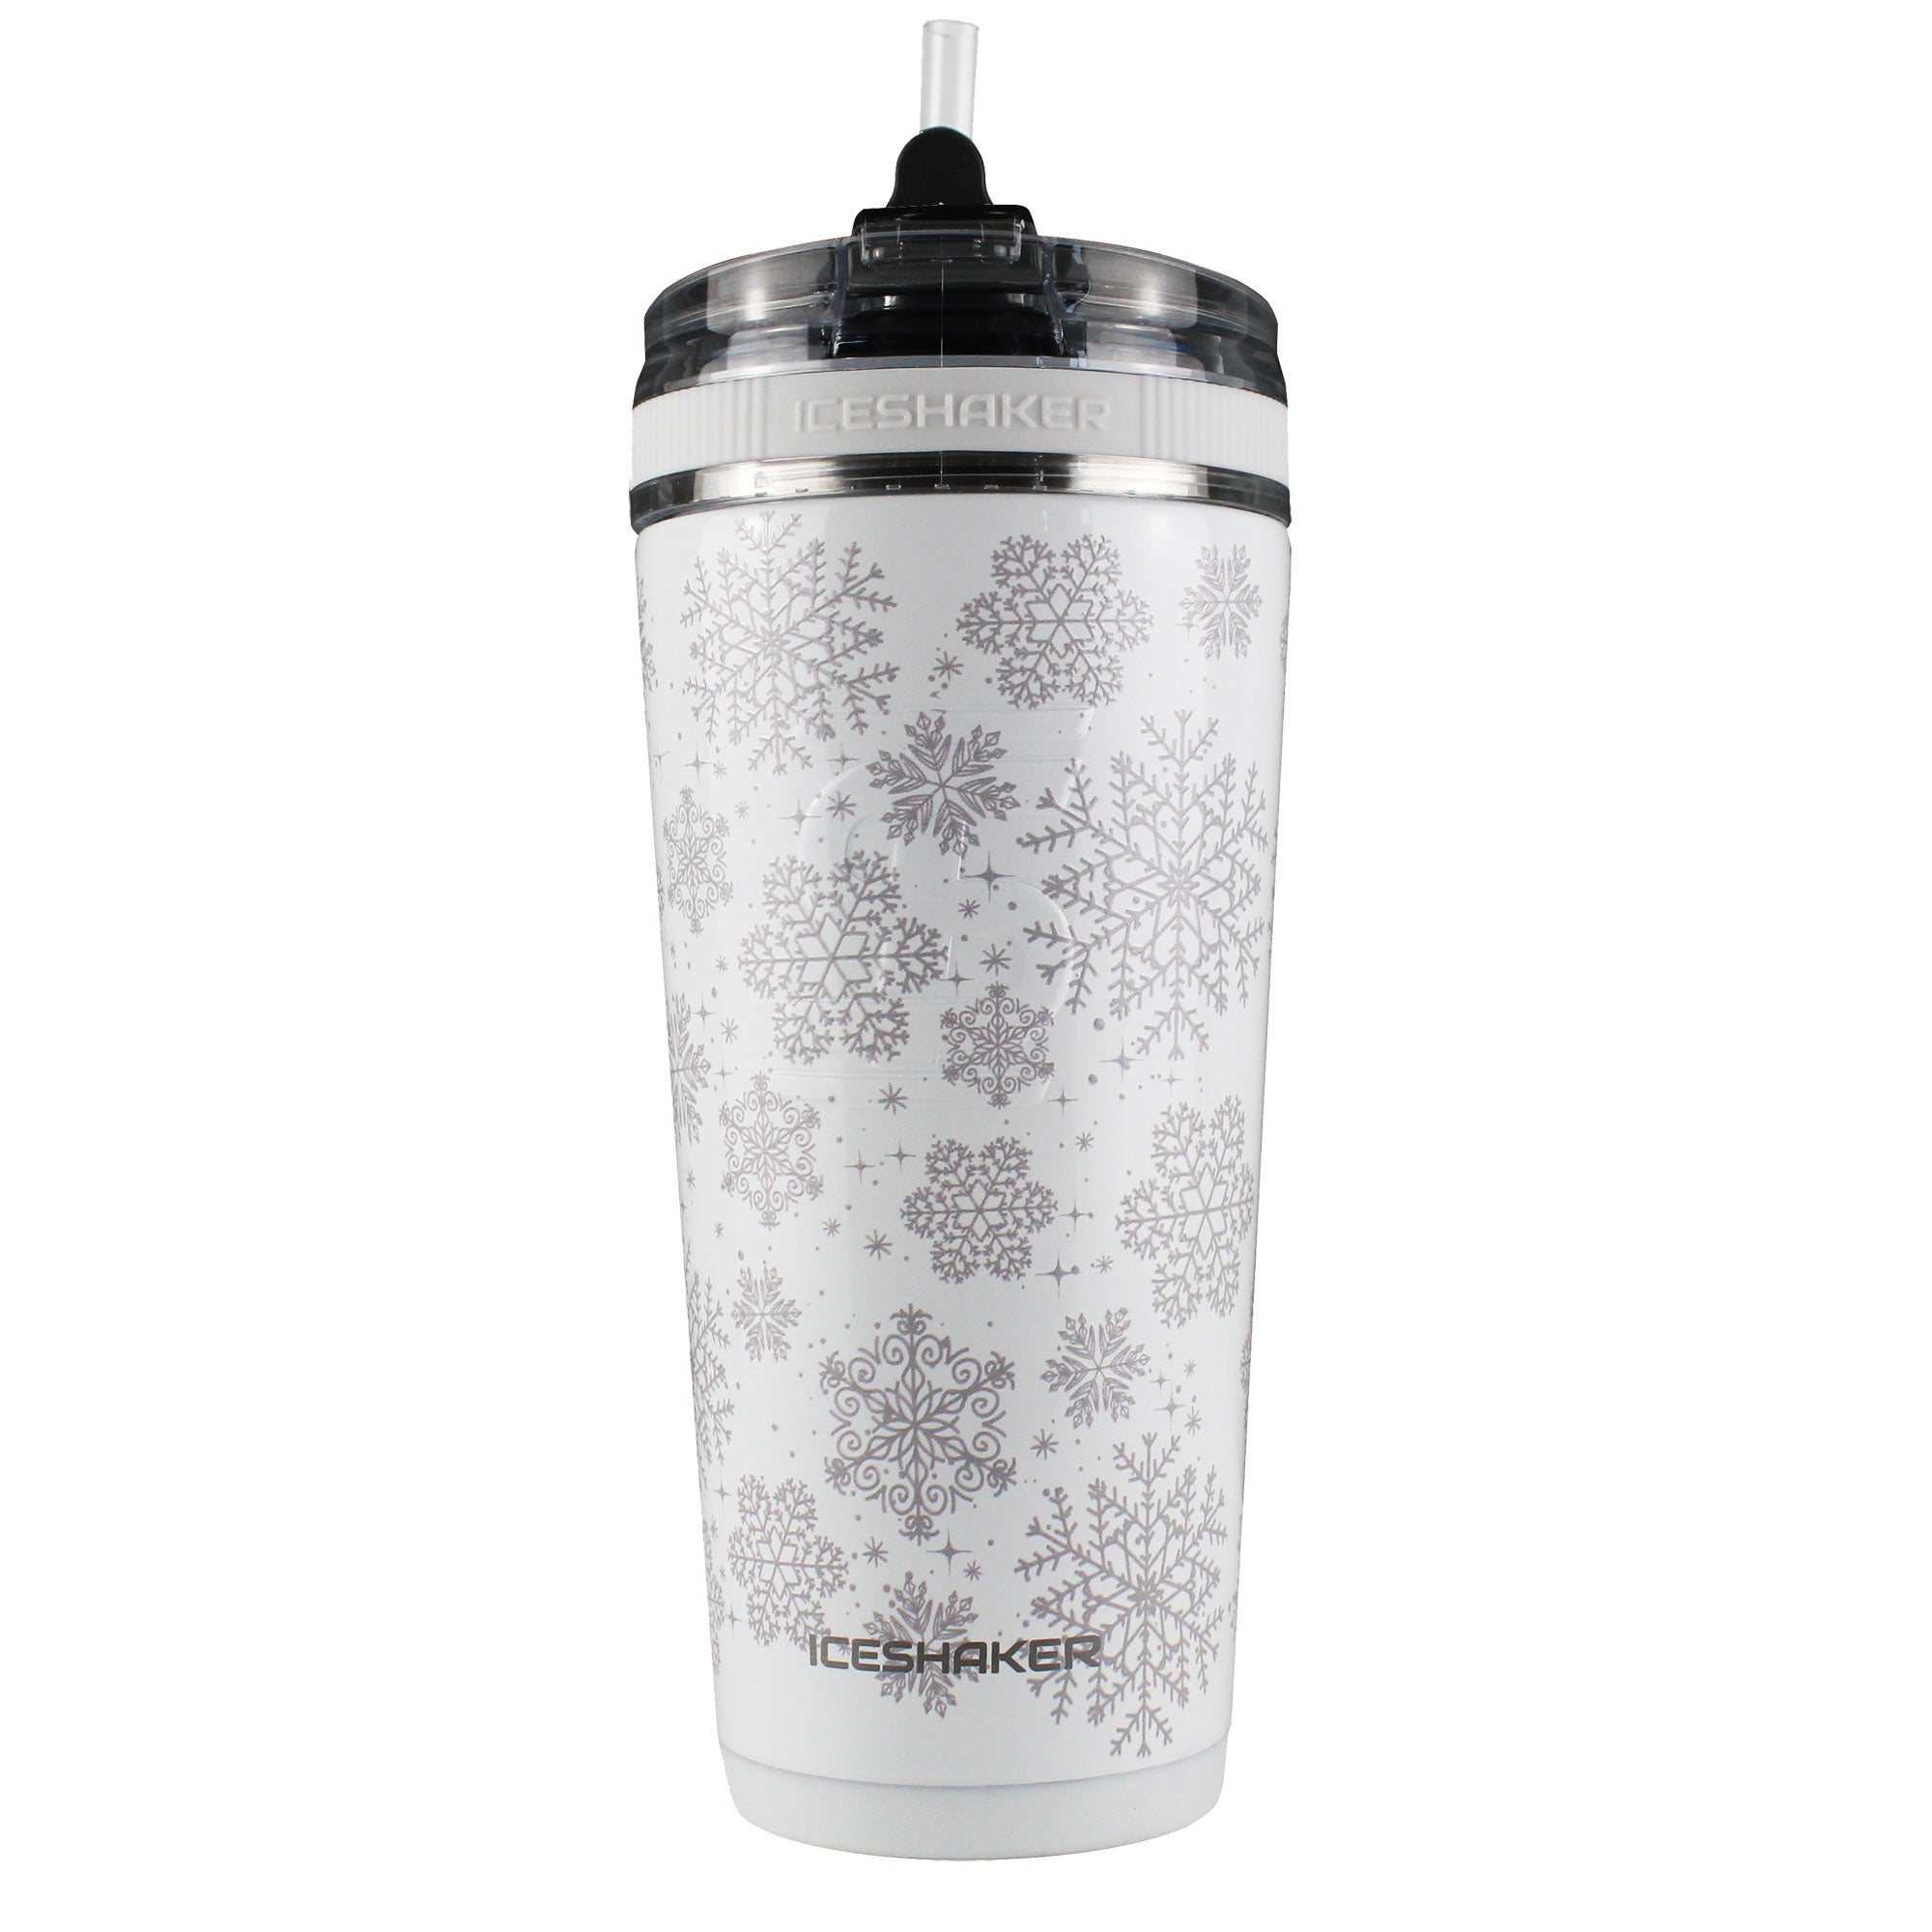 BOTTLE BOTTLE 26oz Insulated Shaker Bottle Insulated Stainless